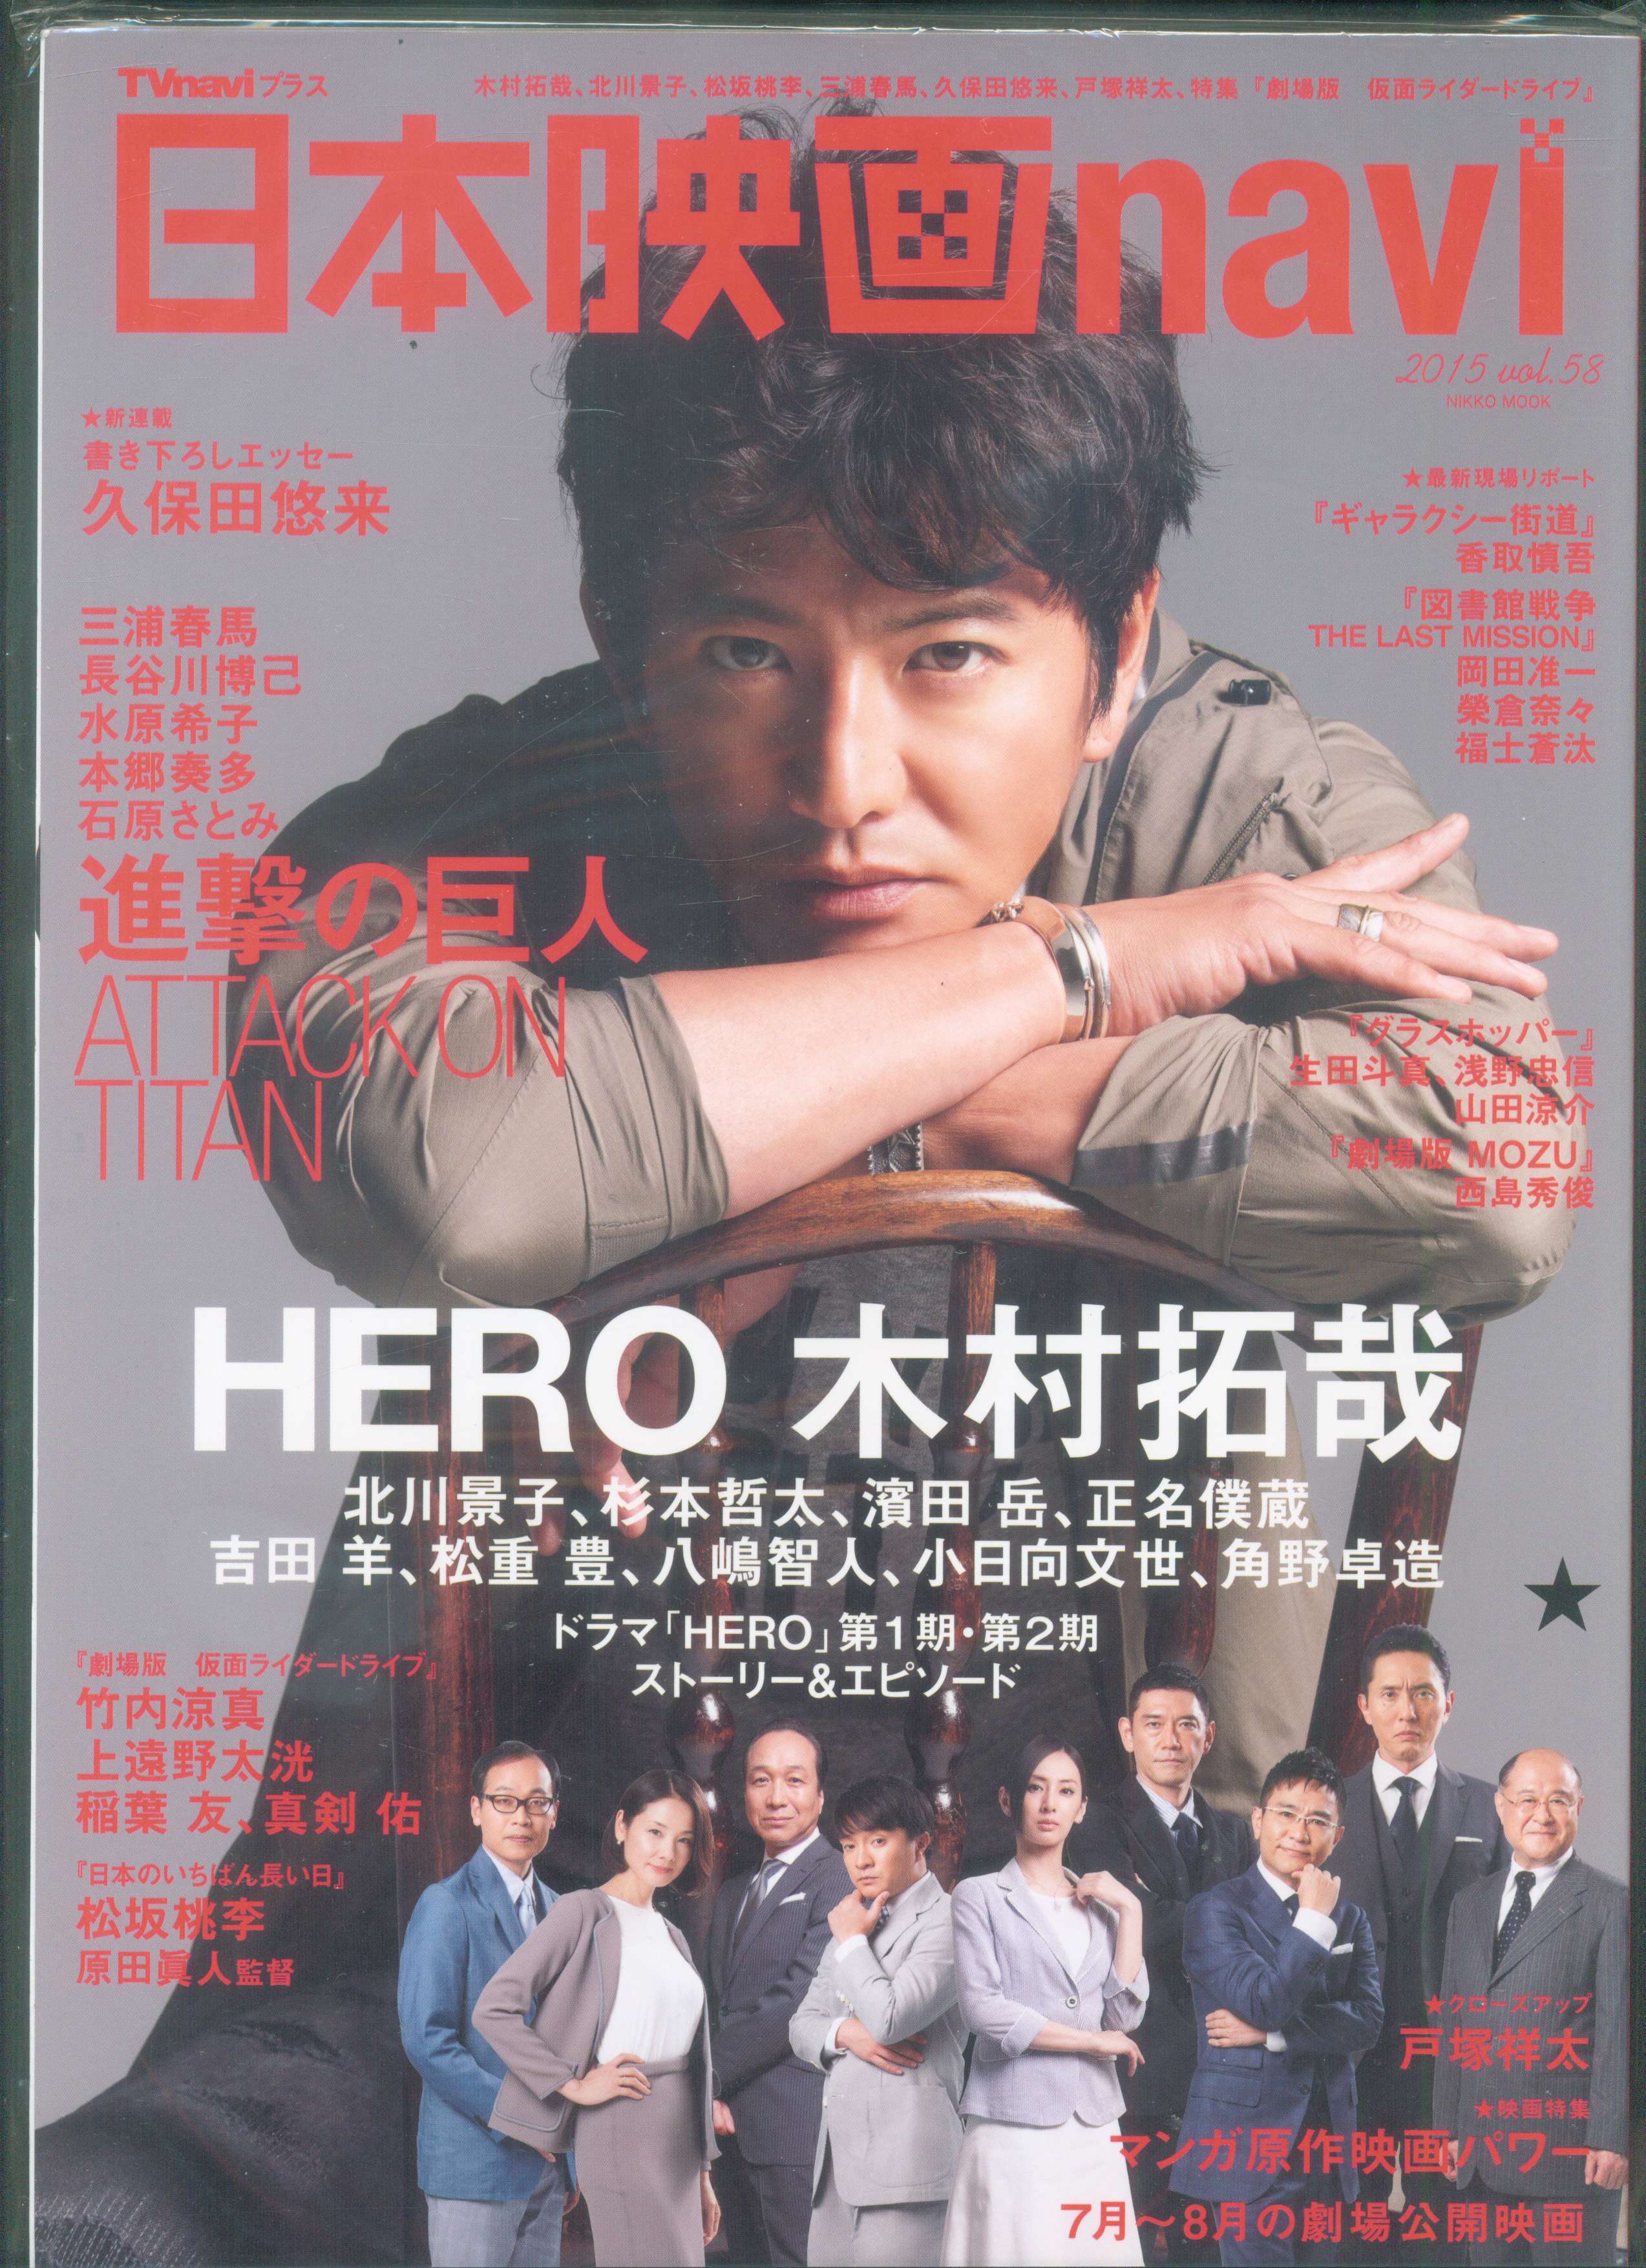 日本映画heroes vol.4 (三浦春馬美しきヒーローたち『星の大地に降る 